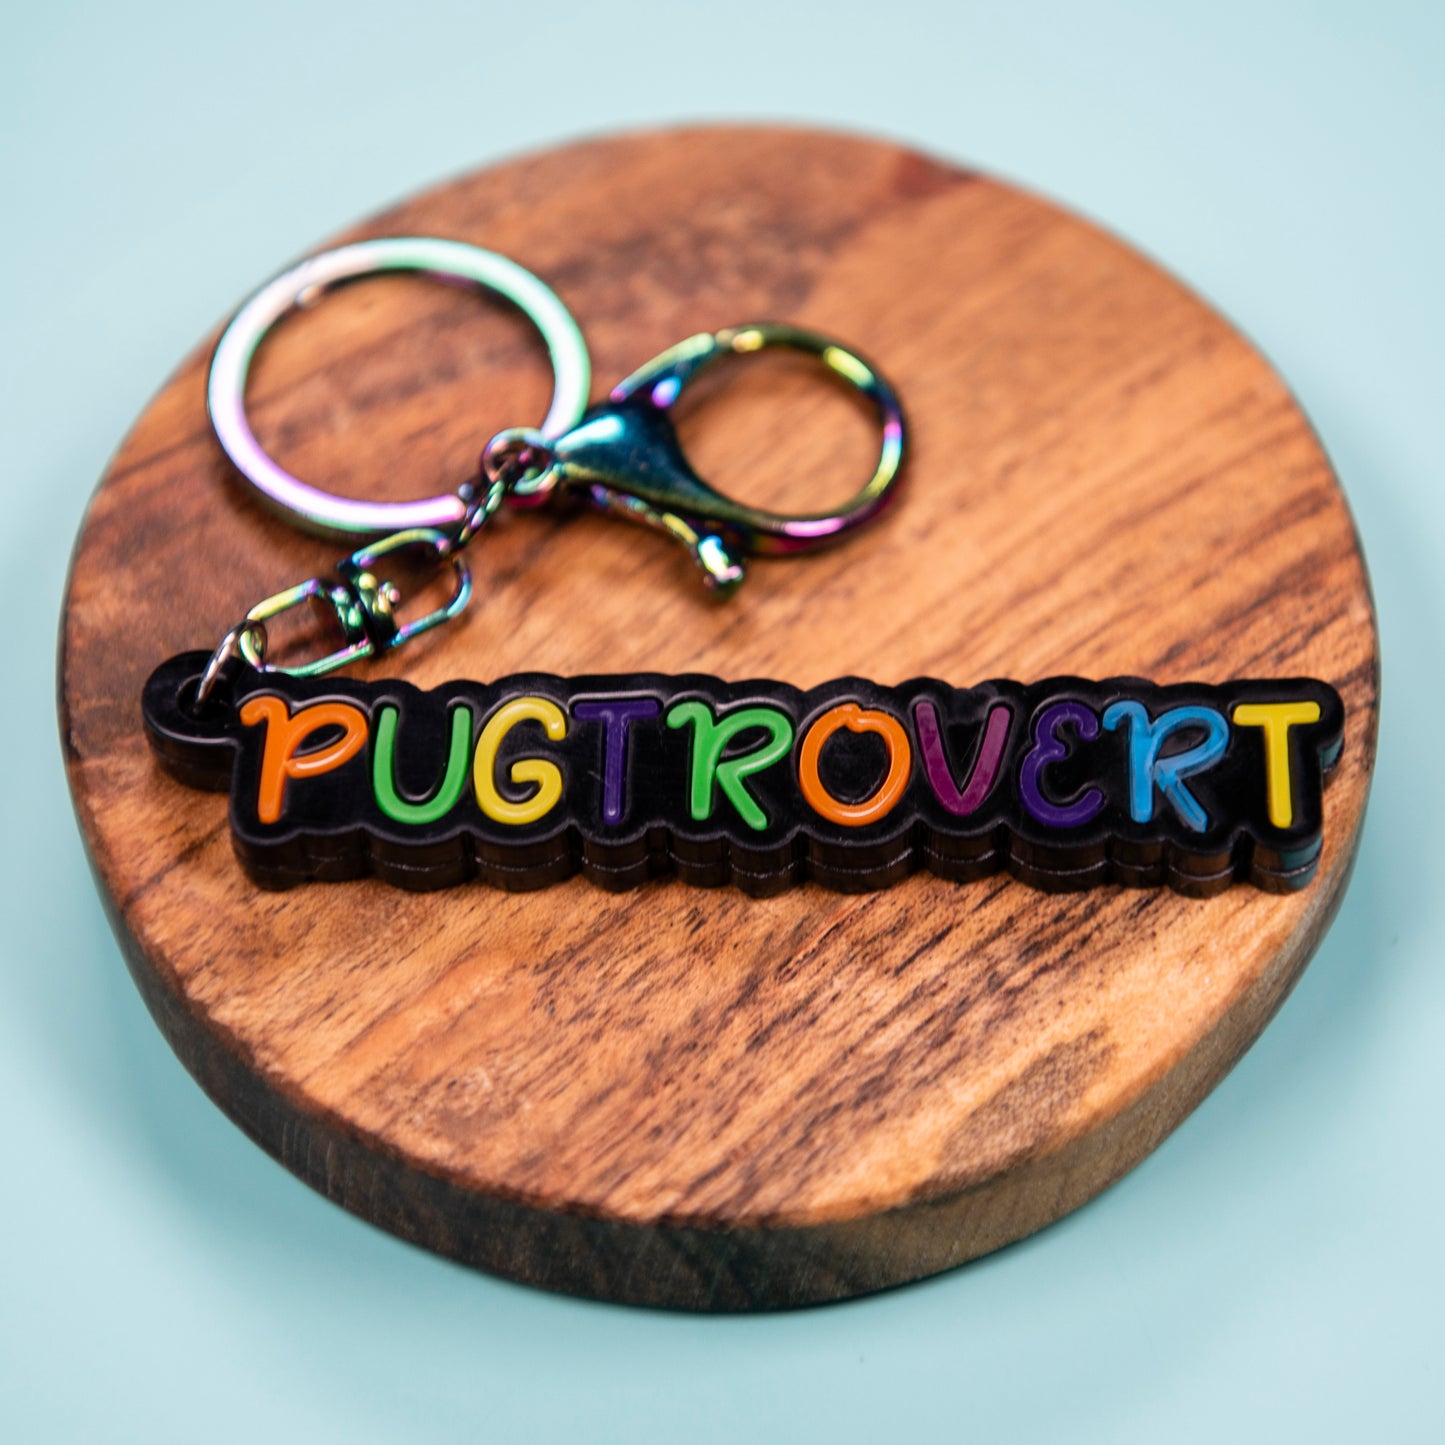 Pugtrovert Keyring